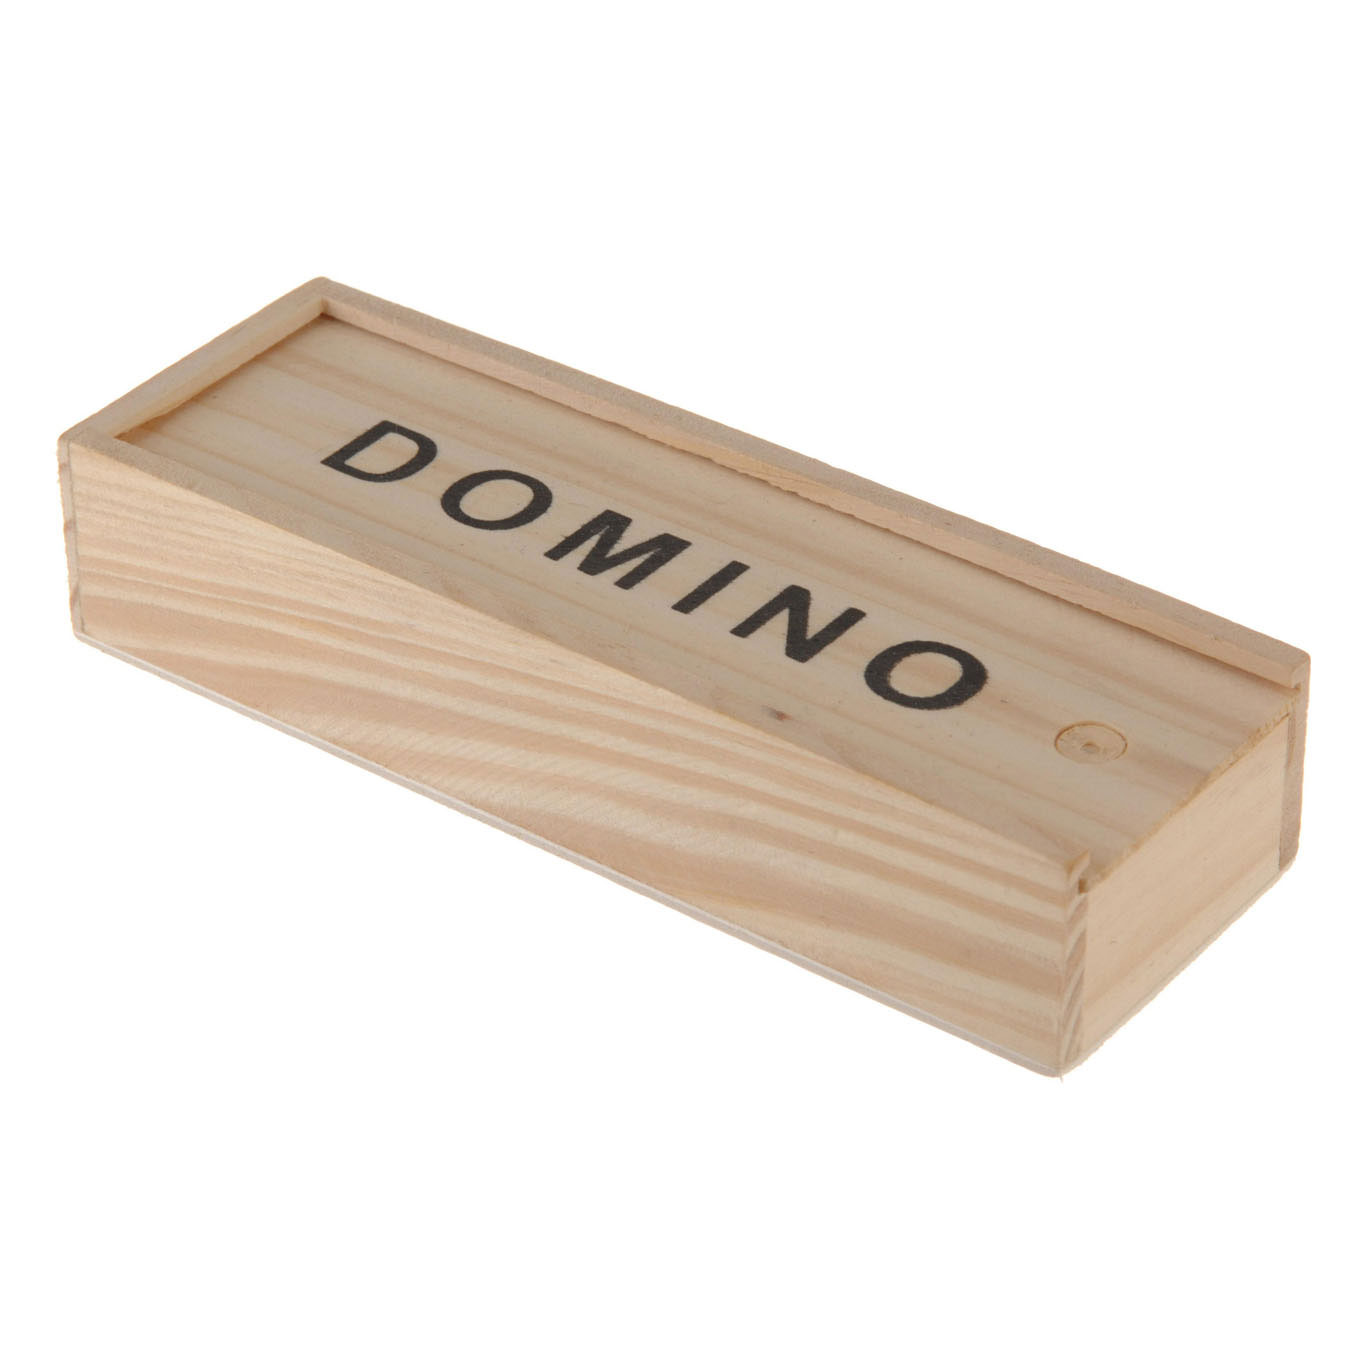 Domino in Houten Kistje online kopen? |